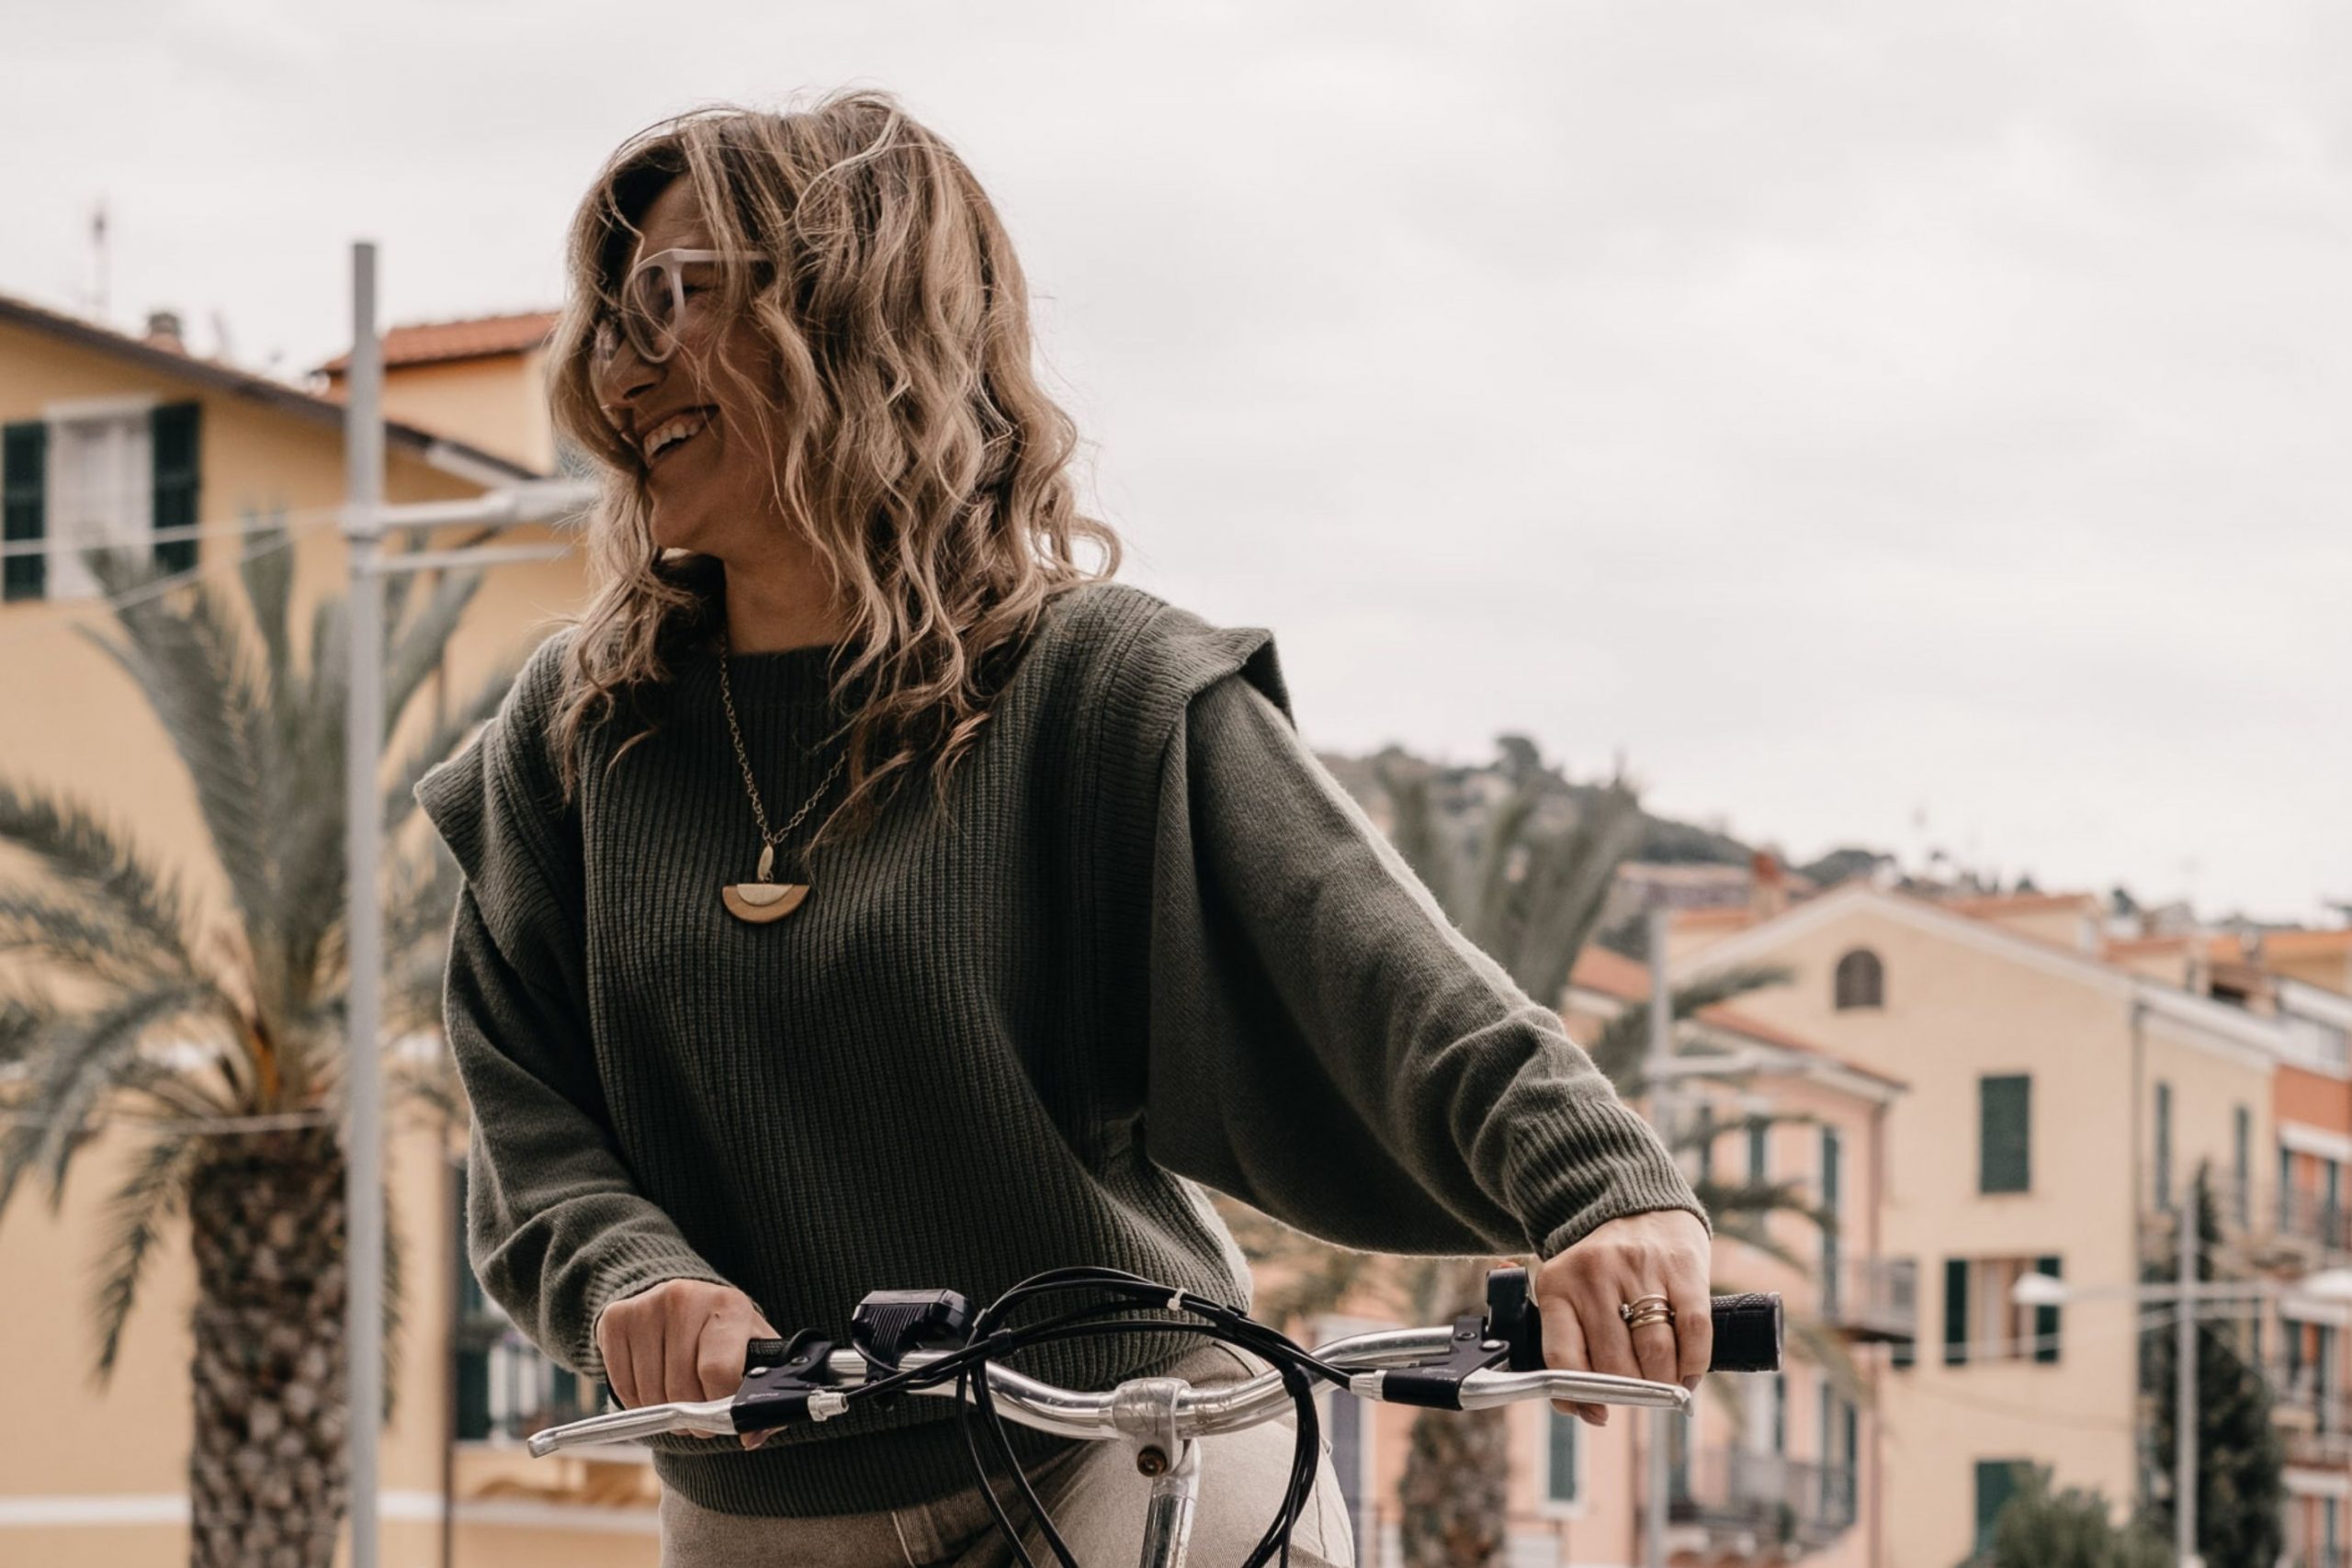 Floriana, l’anima di Vayadù, sorride mentre inforca la bici noleggiata ad Ospedaletti e si avvia verso la ciclabile del parco costiero della Riviera dei Fiori.